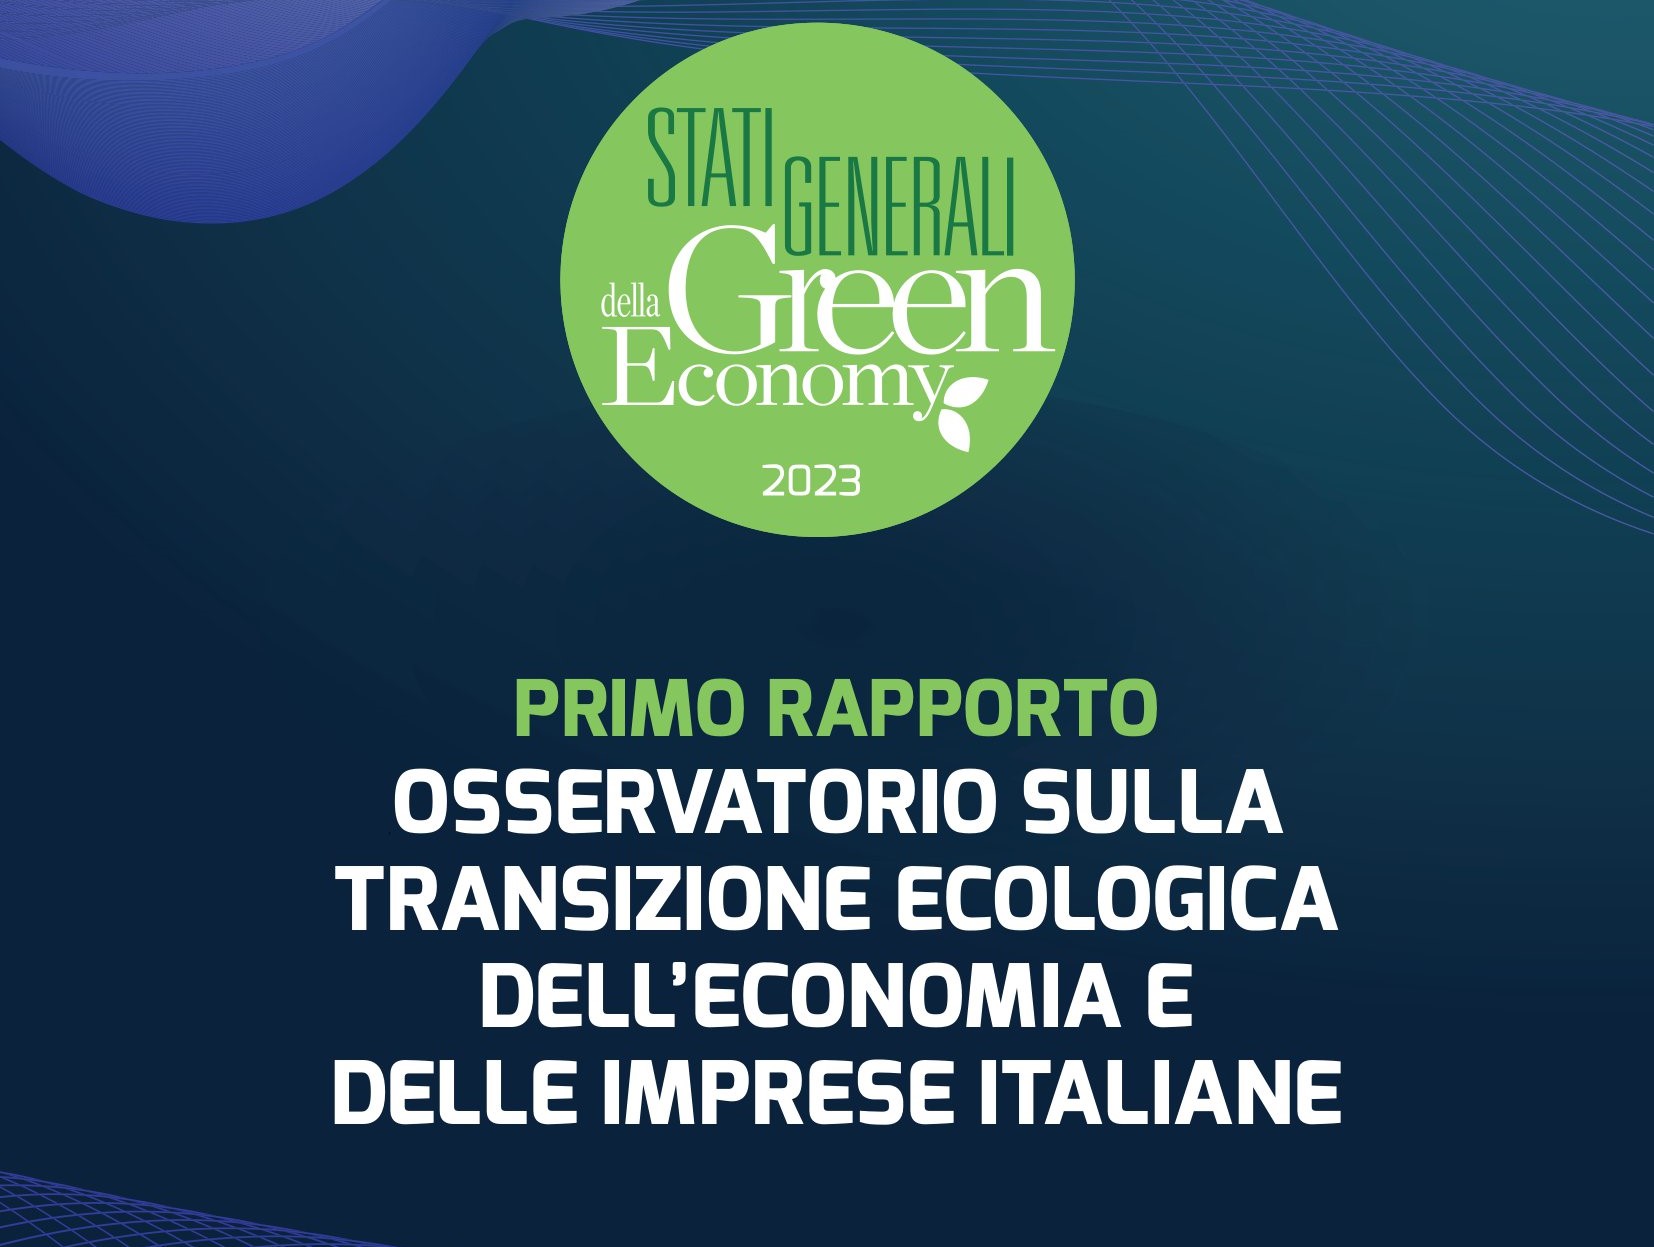 Osservatorio sulla transizione ecologica dell’economia e delle imprese italiane: presentato il primo rapporto